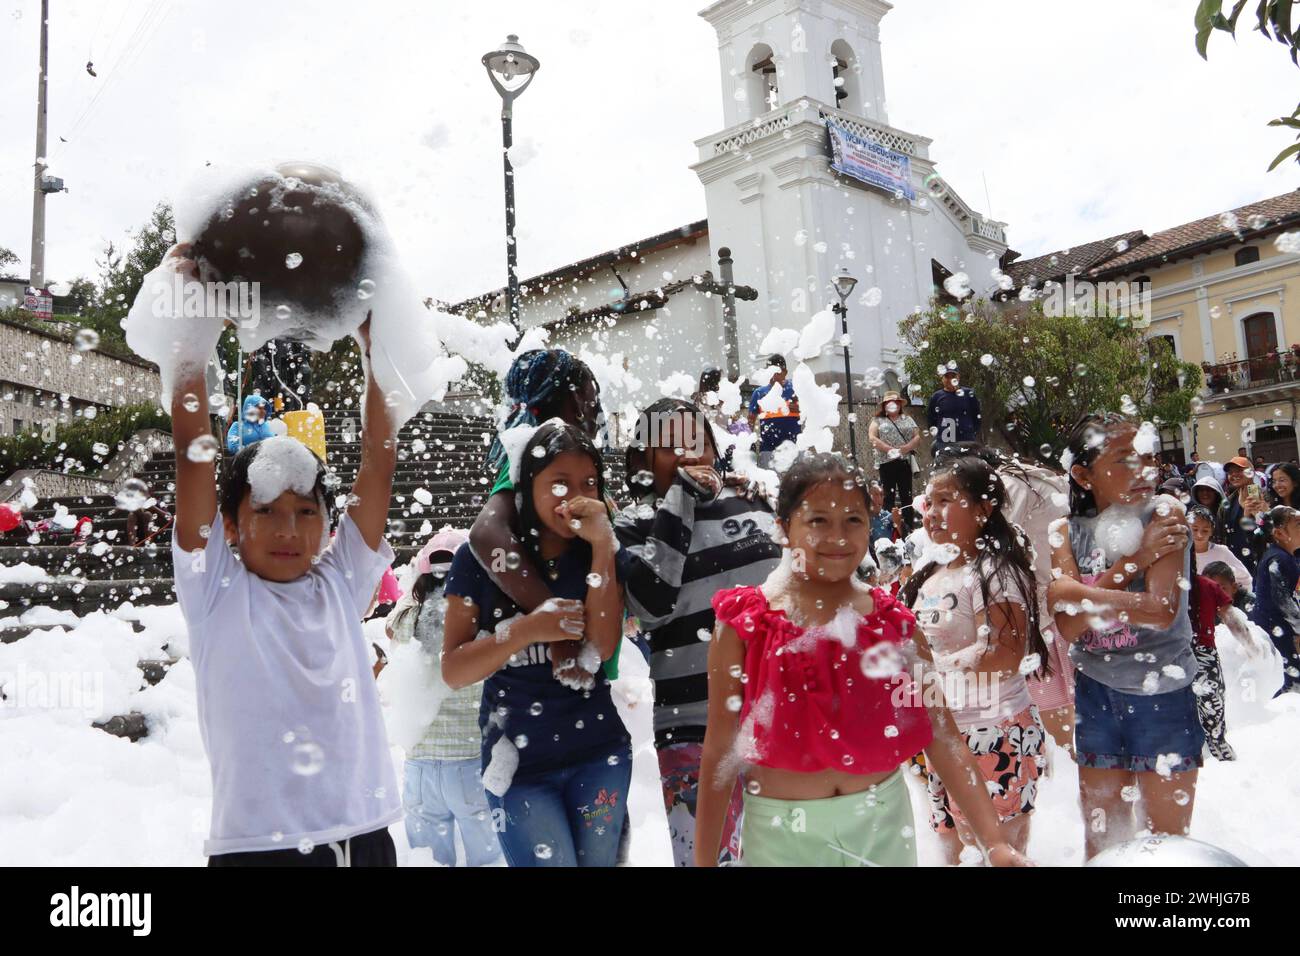 UIO-CARNAVAL-PLAZA-SAN-BLAS Quito, sabado 10 de febrero del 2024 Con Bandas de Paz, bailes tradicionales, canon de espuma, ninos, jovenes y adultos, festejan el feriado de carnaval, en la Plaza de San Blas, Centro Historico. Fotos:Rolando Enriquez/API Quito Pichincha Ecuador ACE-UIO-CARNAVAL-PLAZA-SAN-BLAS-a7d1733fb94294c0df244ce398fe208e *** UIO CARNAVAL PLAZA SAN BLAS Quito, Saturday February 10, 2024 With bands of peace, traditional dances, foam canon, children, youth and adults, celebrate the carnival holiday in the Plaza de San Blas, Centro Historico Photos Rolando Enriquez API Quito Pich Stock Photo